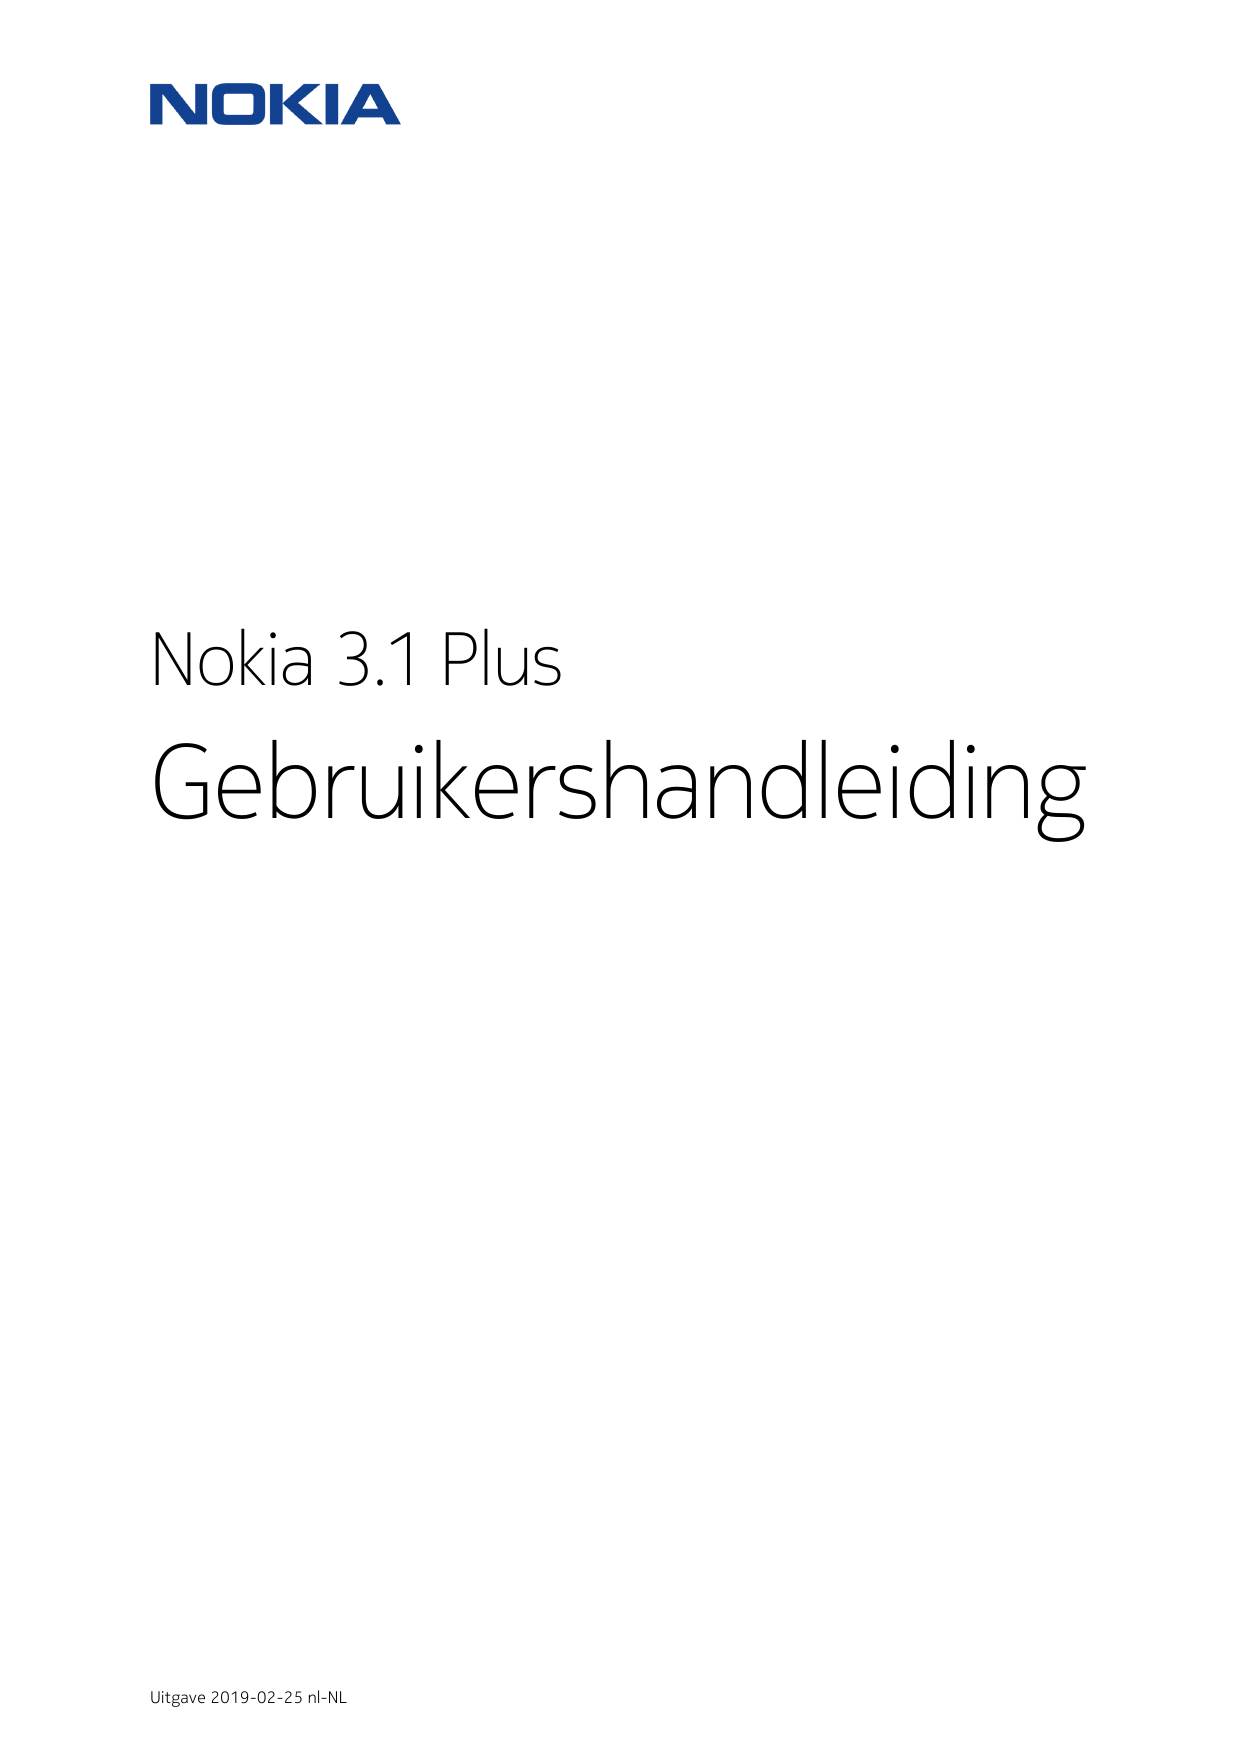 Nokia 3.1 PlusGebruikershandleidingUitgave 2019-02-25 nl-NL